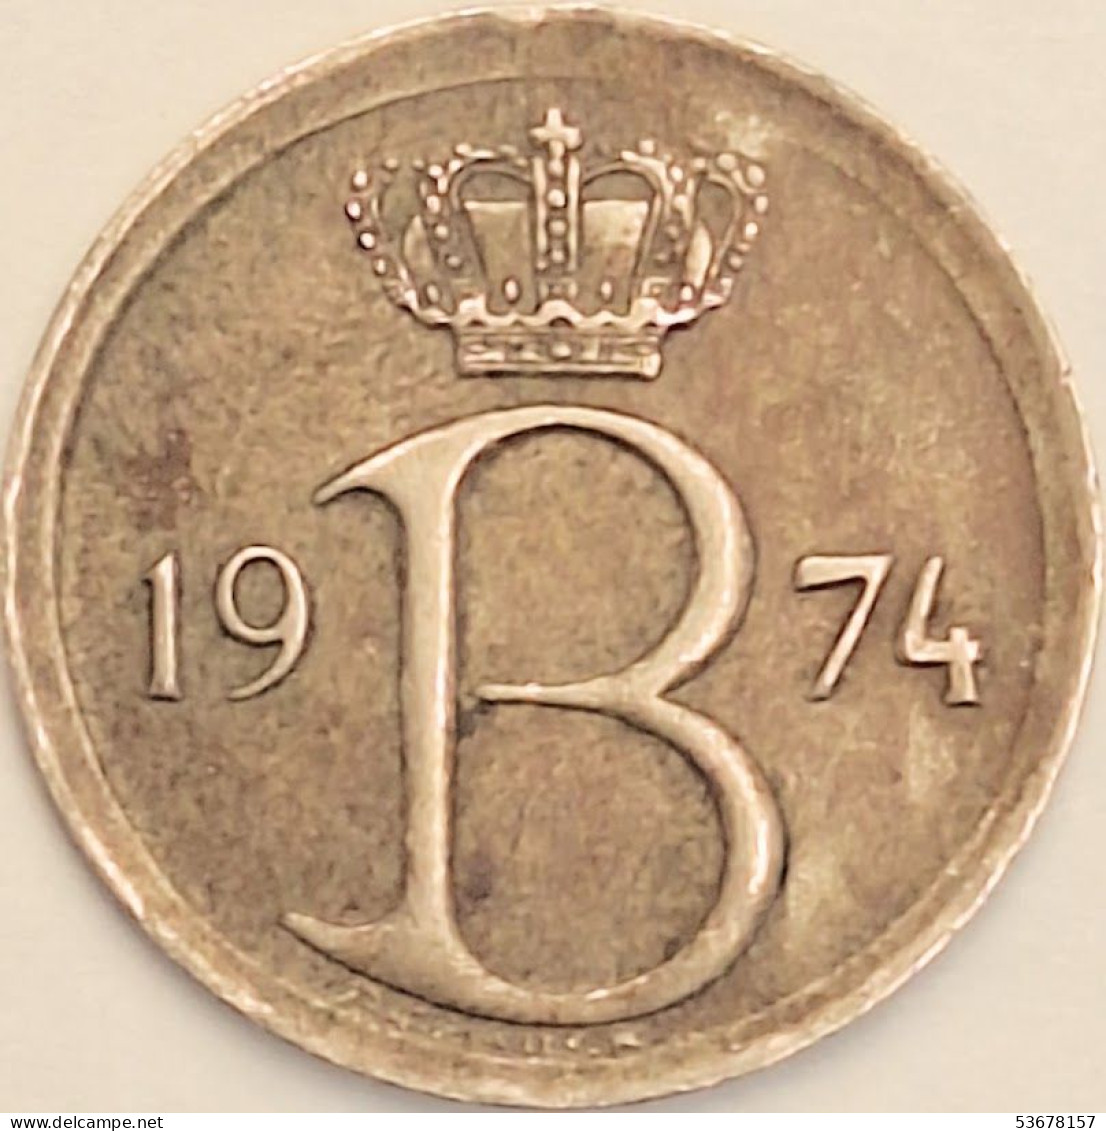 Belgium - 25 Centimes 1974, KM# 154.1 (#3087) - 25 Cent